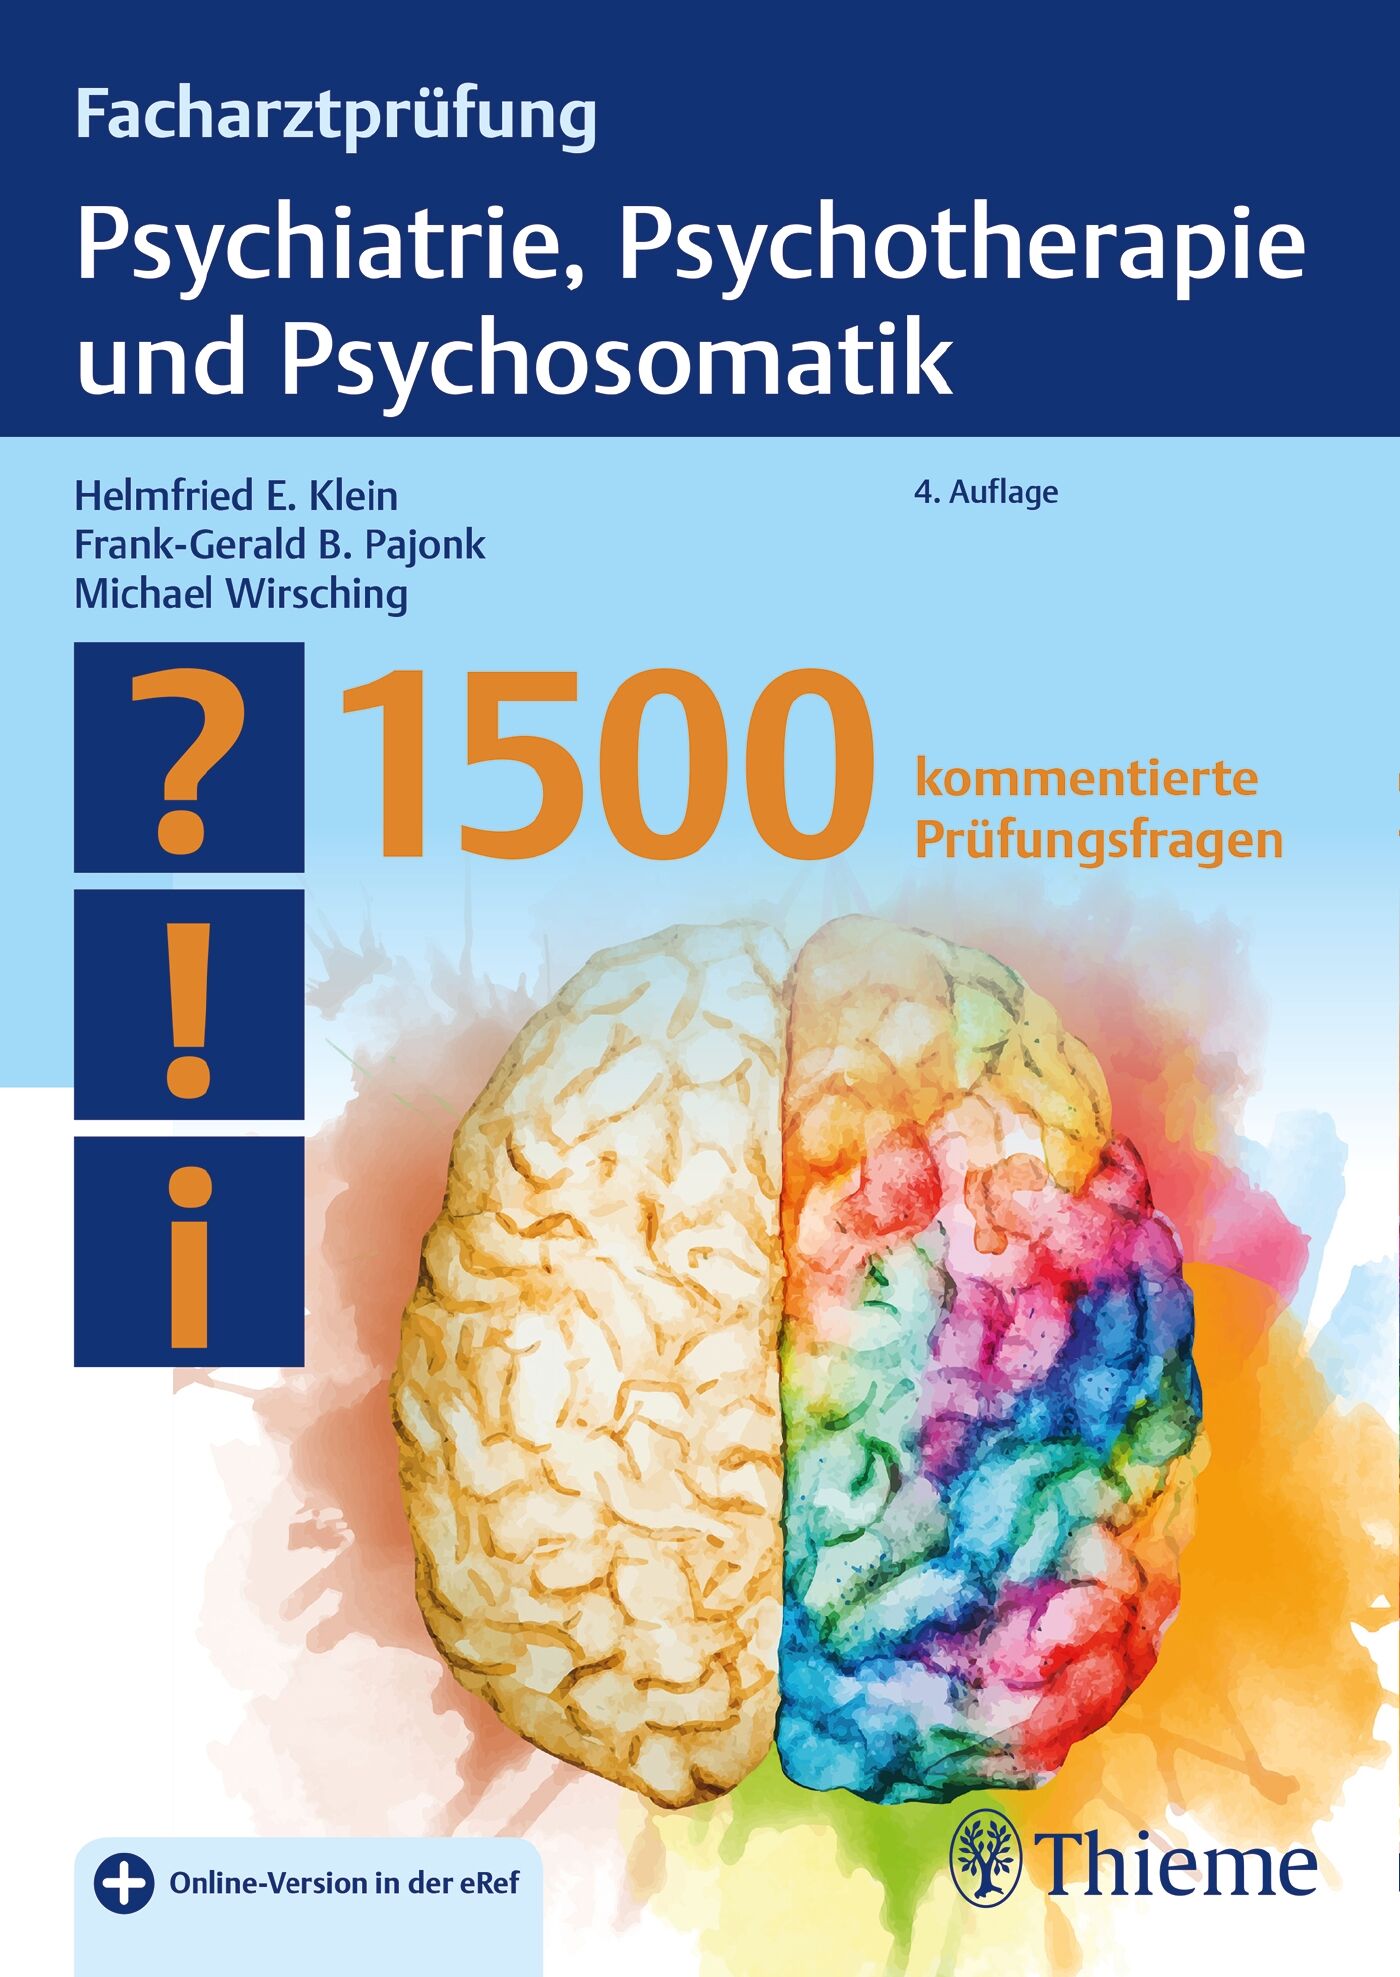 Facharztprüfung Psychiatrie, Psychotherapie und Psychosomatik, 9783132403291